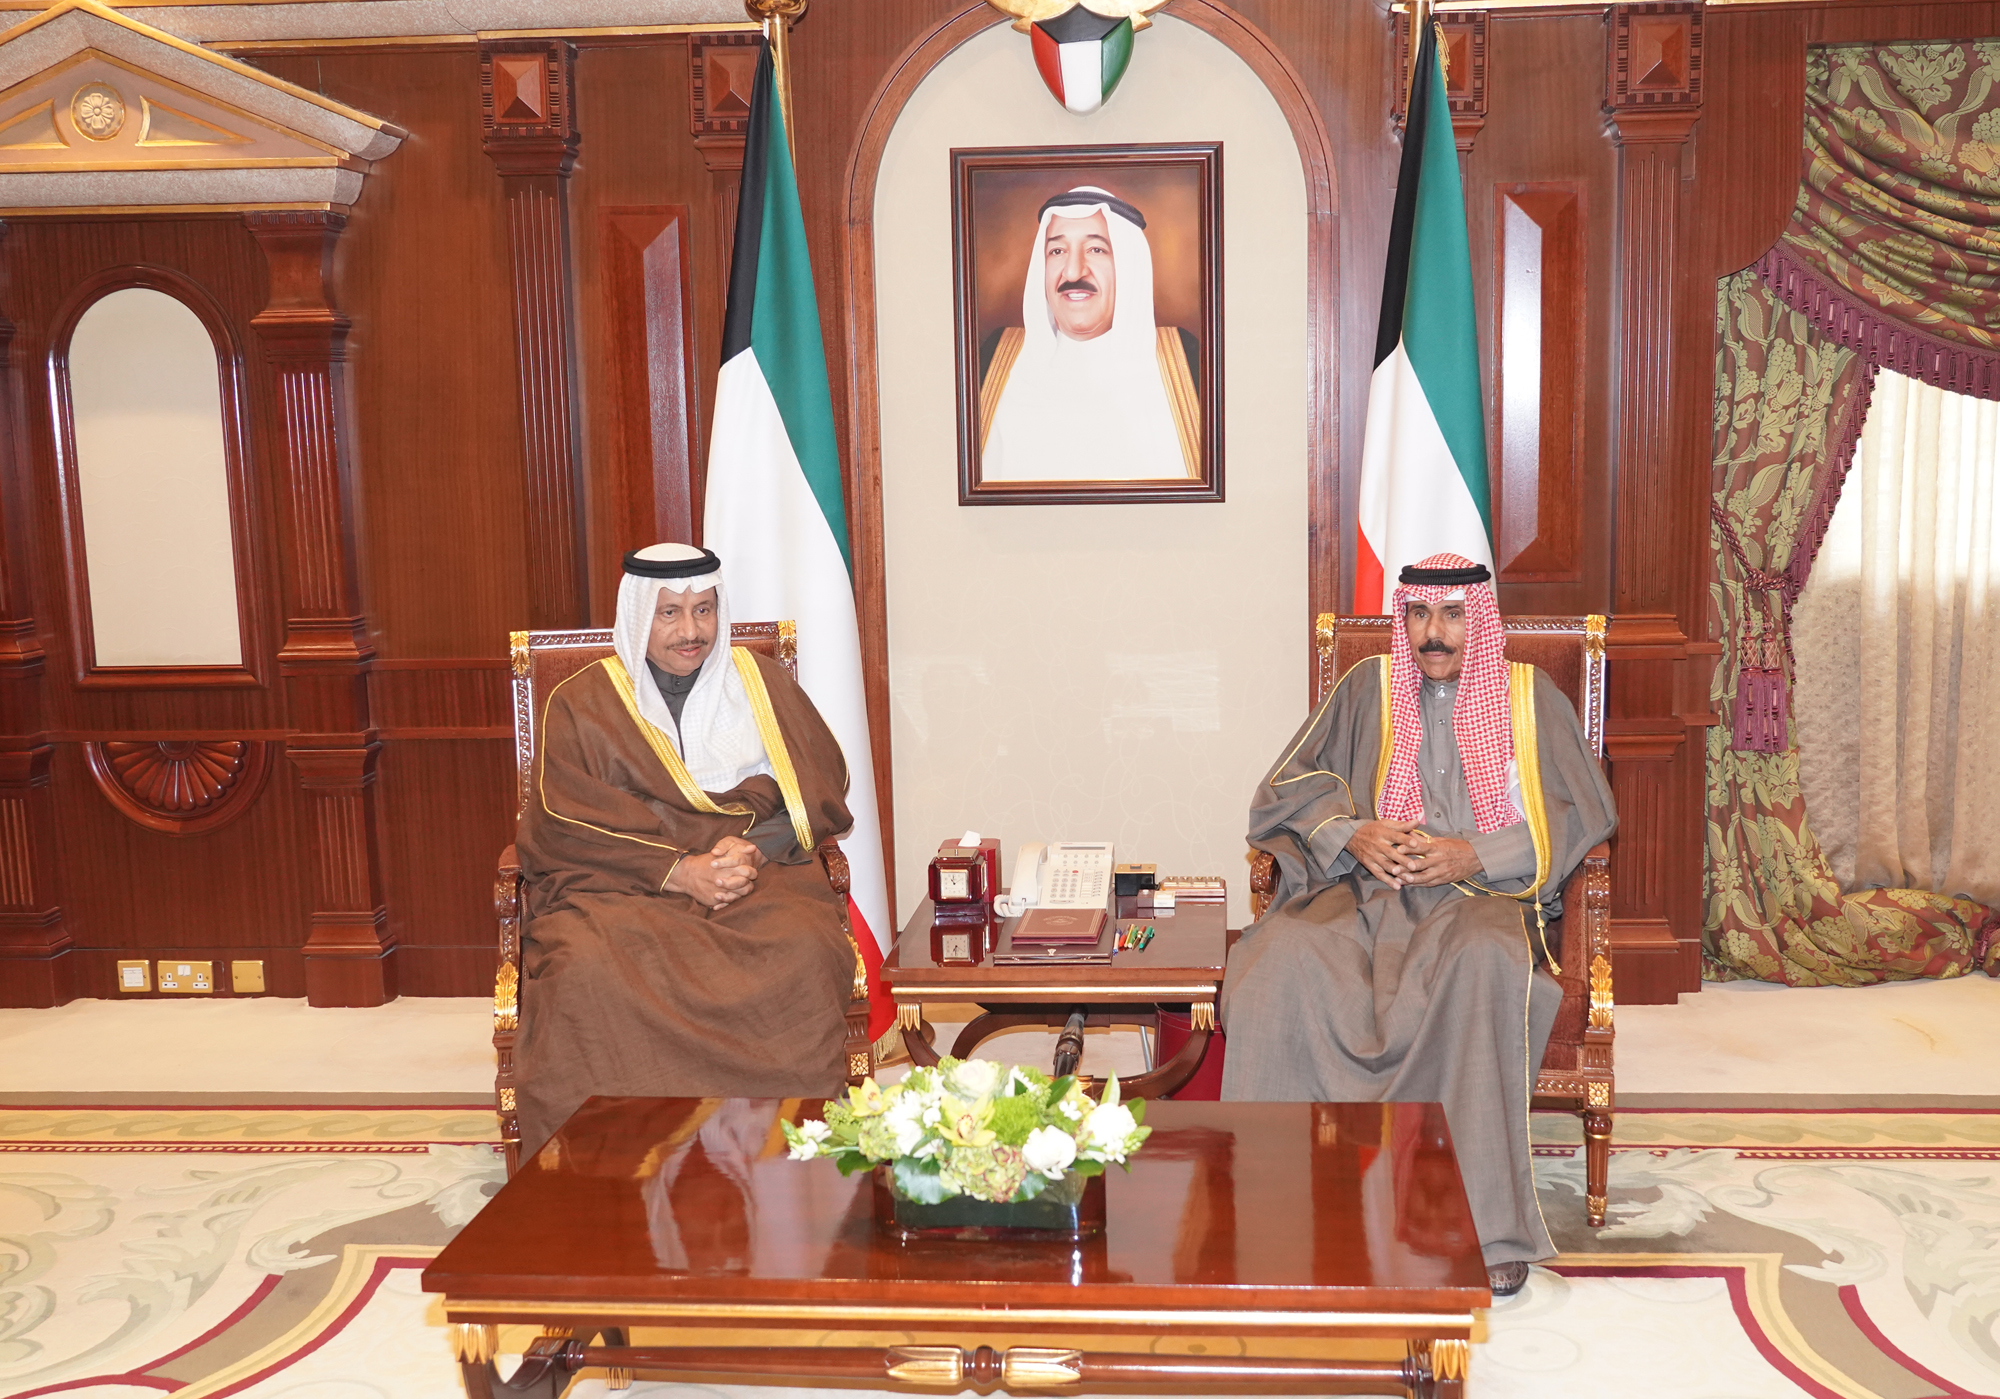  His Highness the Crown Prince Sheikh Nawaf Al-Ahmad Al-Jaber Al-Sabah receives His Highness the Premier Sheikh Jaber Al-Mubarak Al-Hamad Al-Sabah 